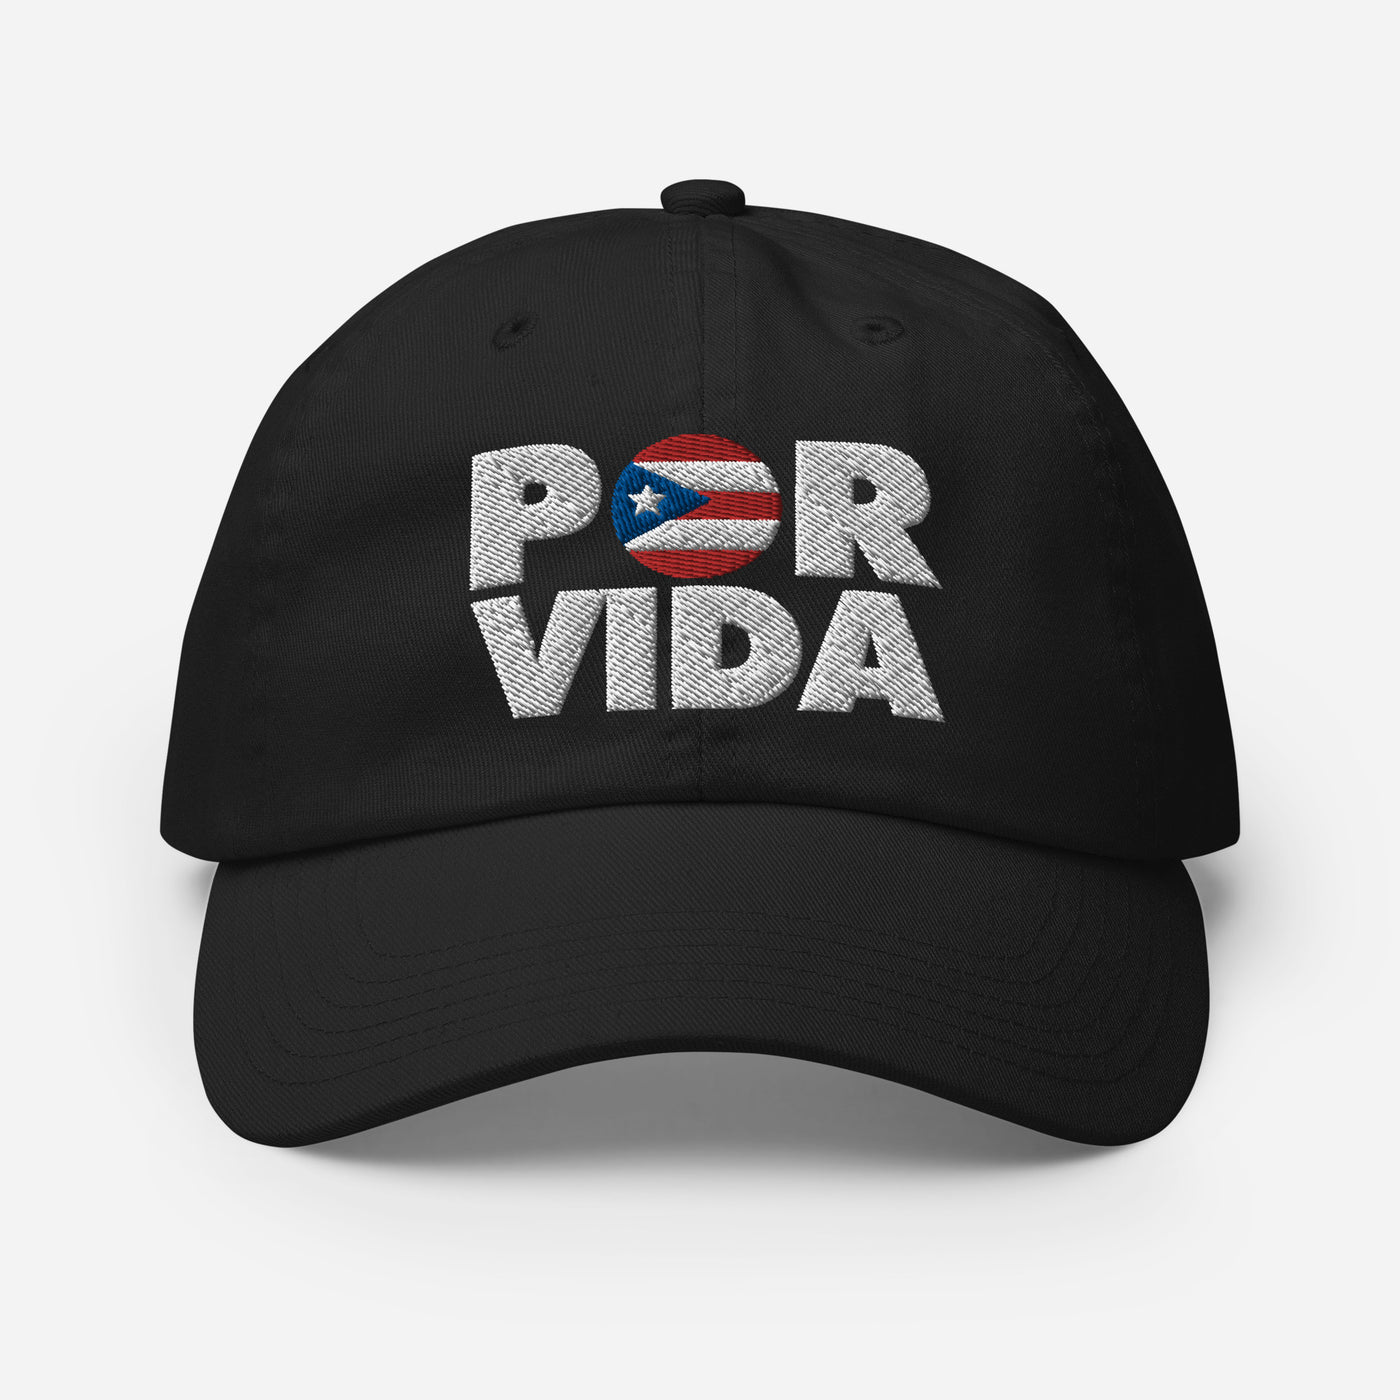 Puerto Rico POR VIDA Champion Dad Cap